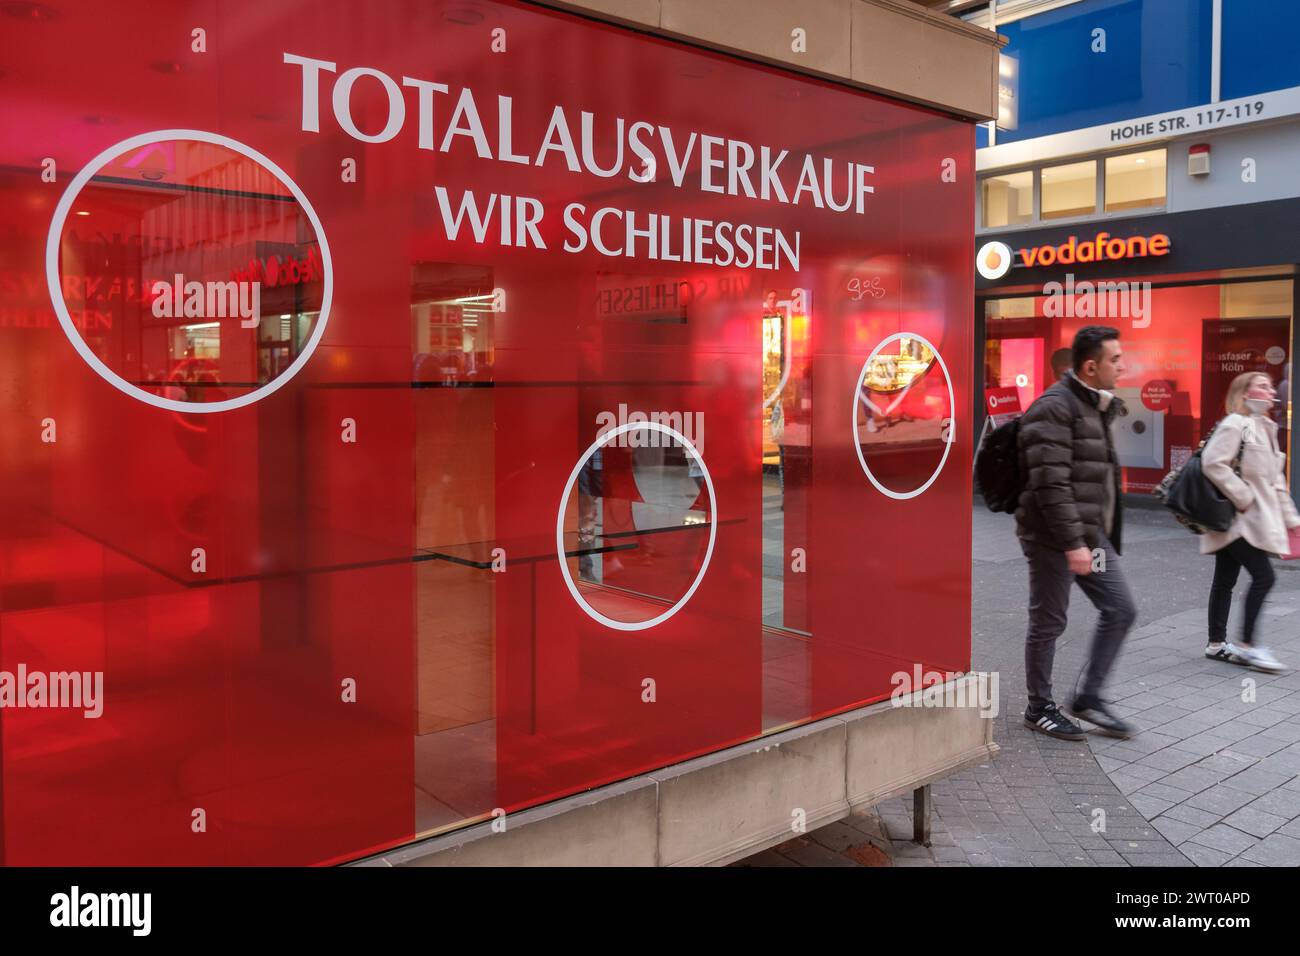 Ein Schaufenster eines Ladens in der Kšlner Hohe Stra§e mit Schild ãWir schliessenÒ | A shop window with a sign 'We are closing' Stock Photo